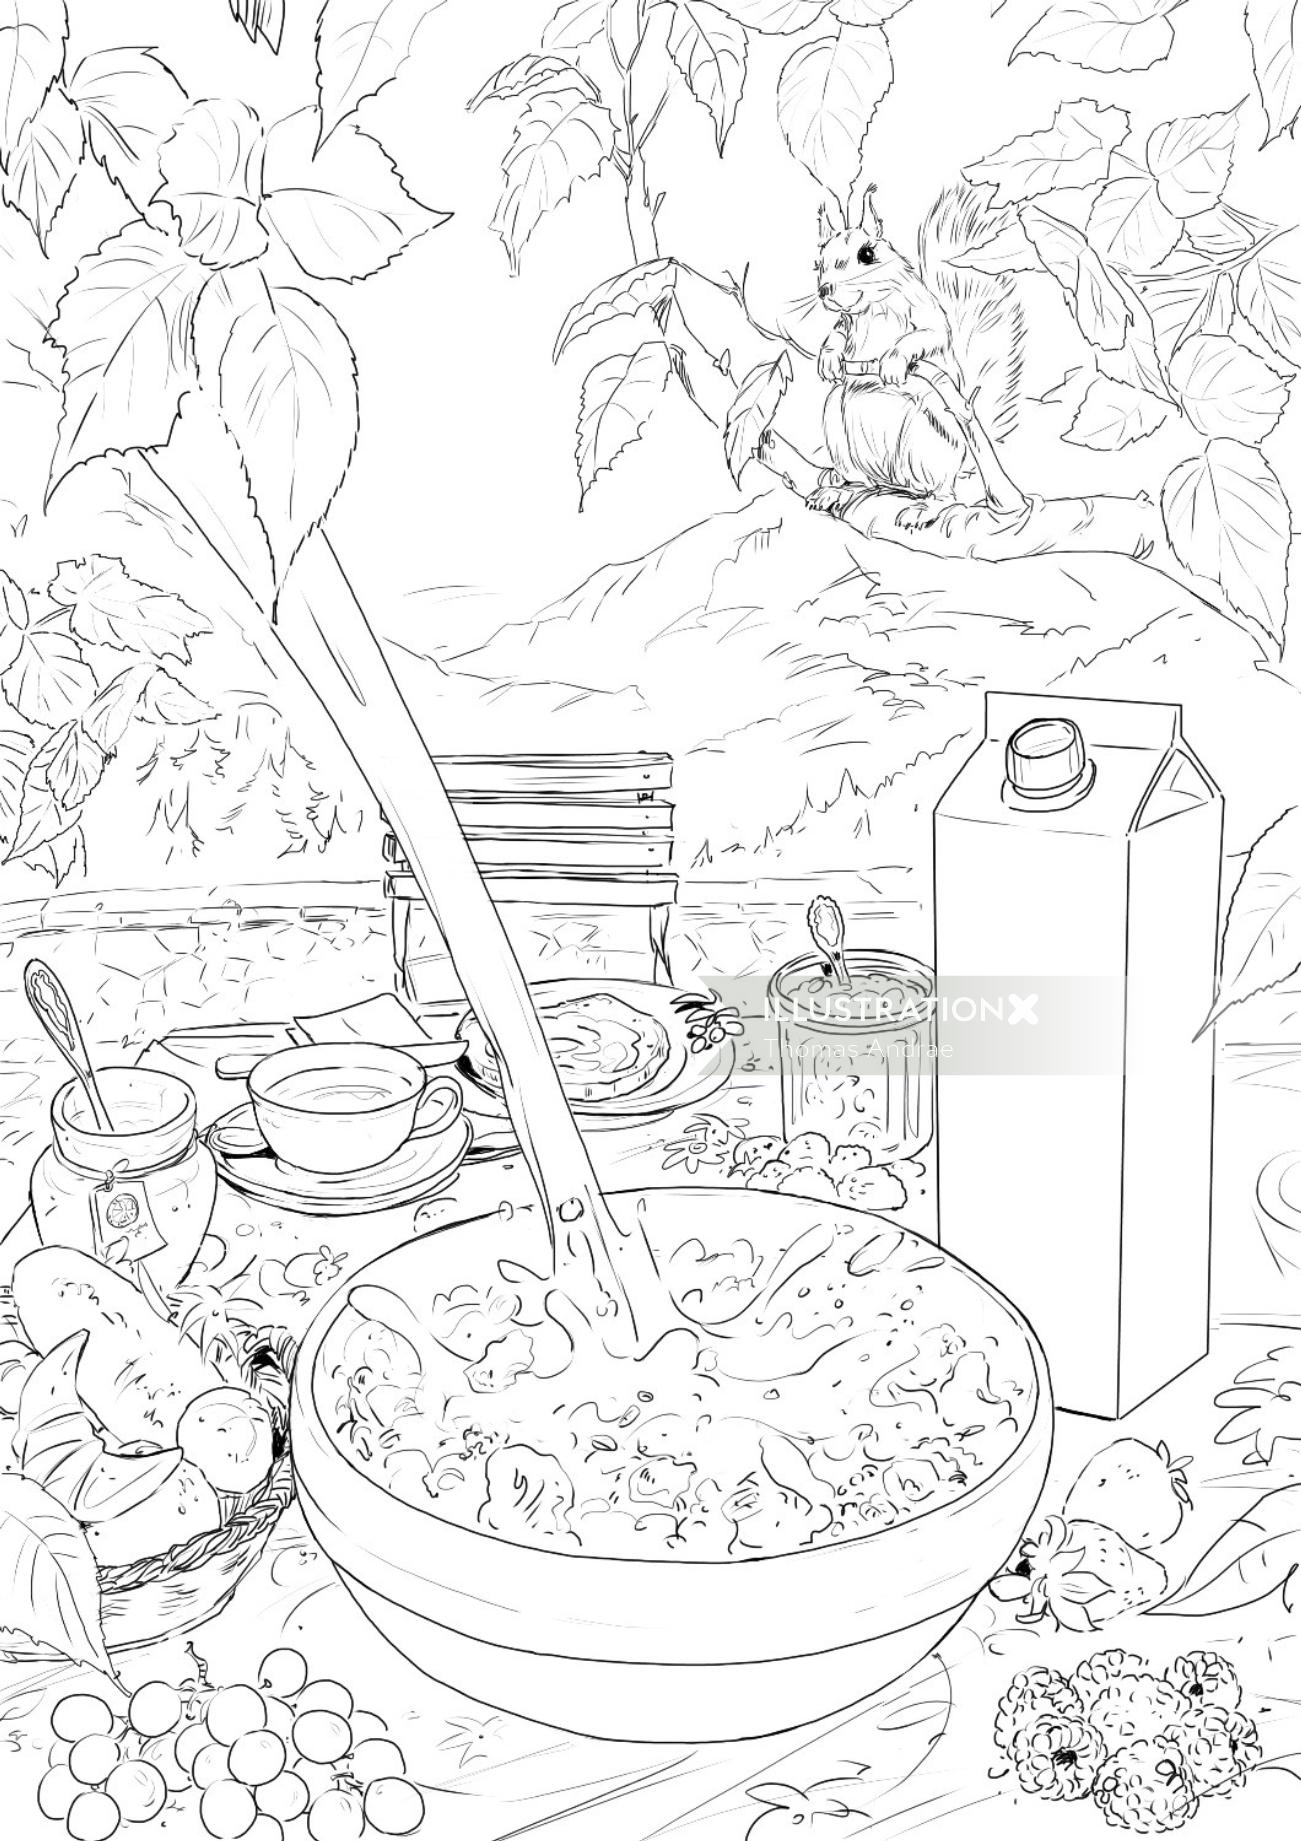 食べ物や木の葉、テーブルの上の食べられるものの線画